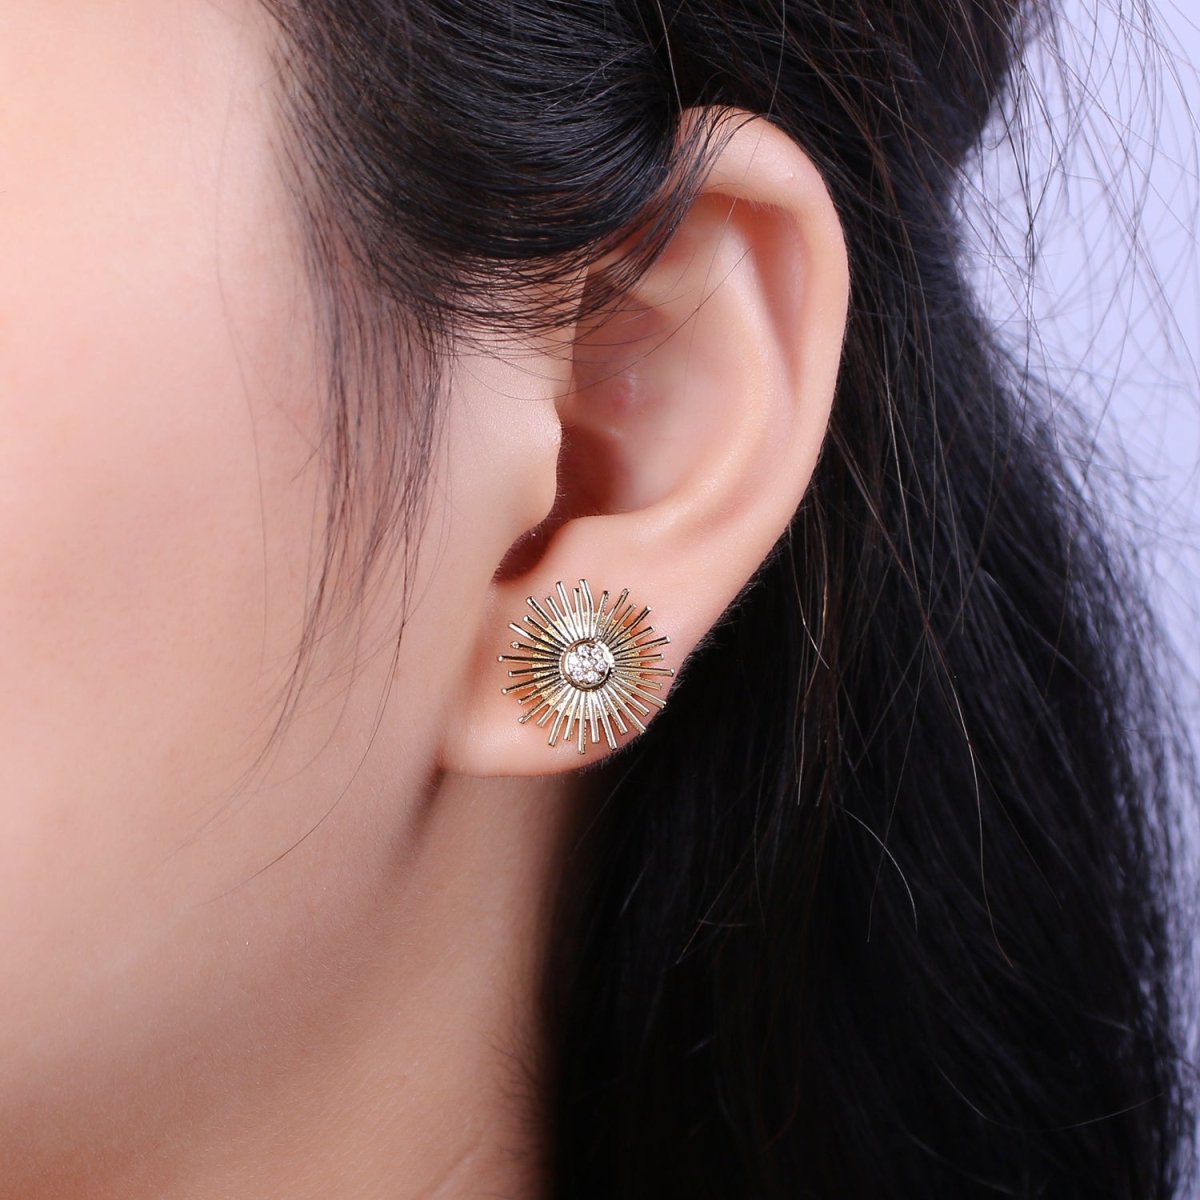 Dainty Sun earrings • sunburst stud earrings • gold sun earrings • gold stud earrings • Cz Everday earrings • small earrings T-234 - DLUXCA